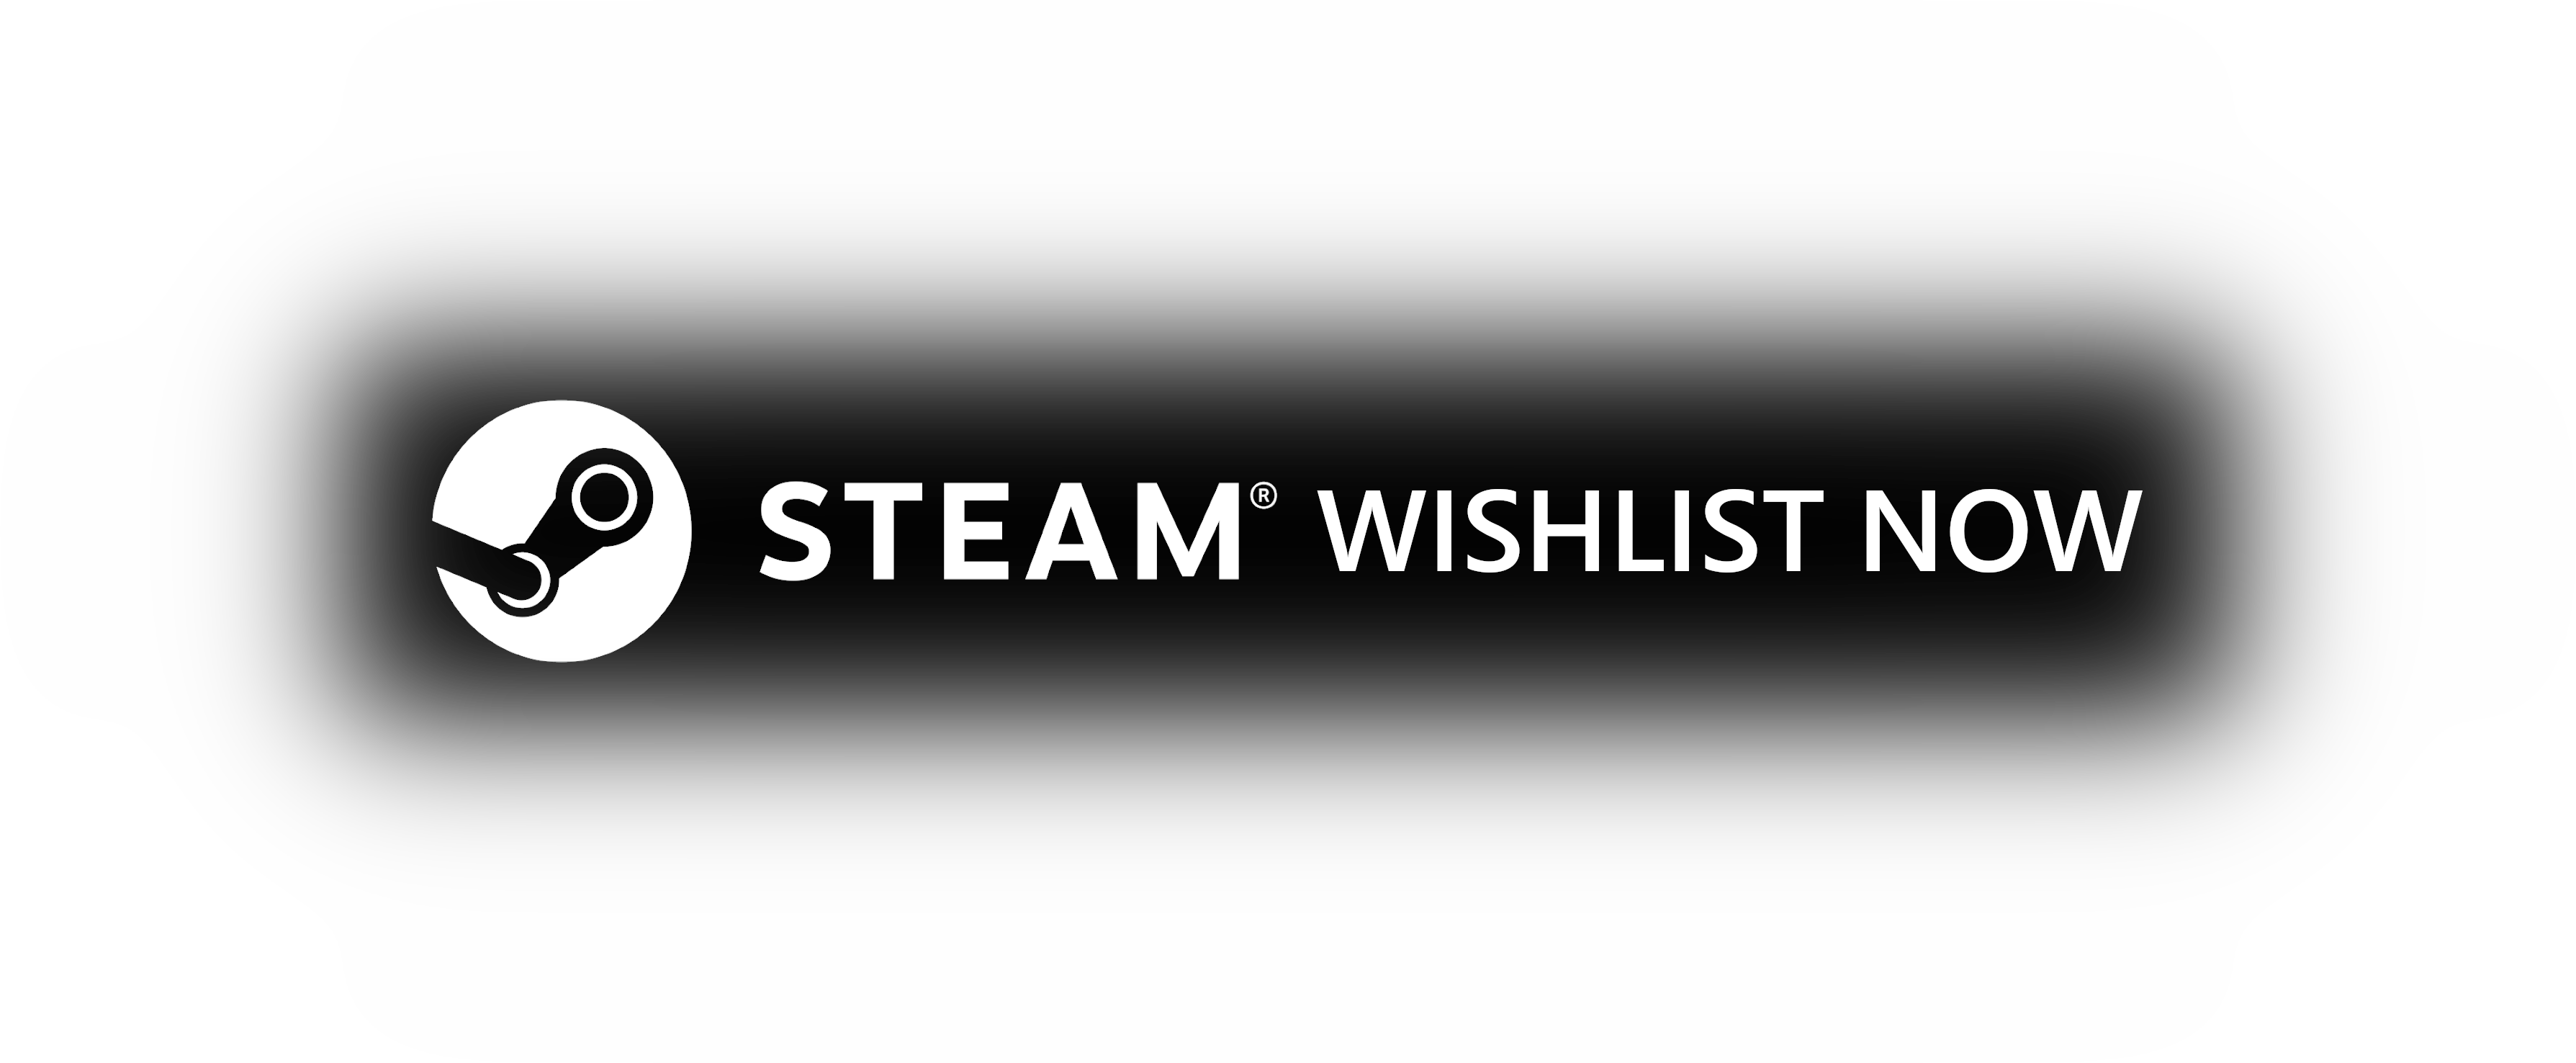 Wishlist on Steam!